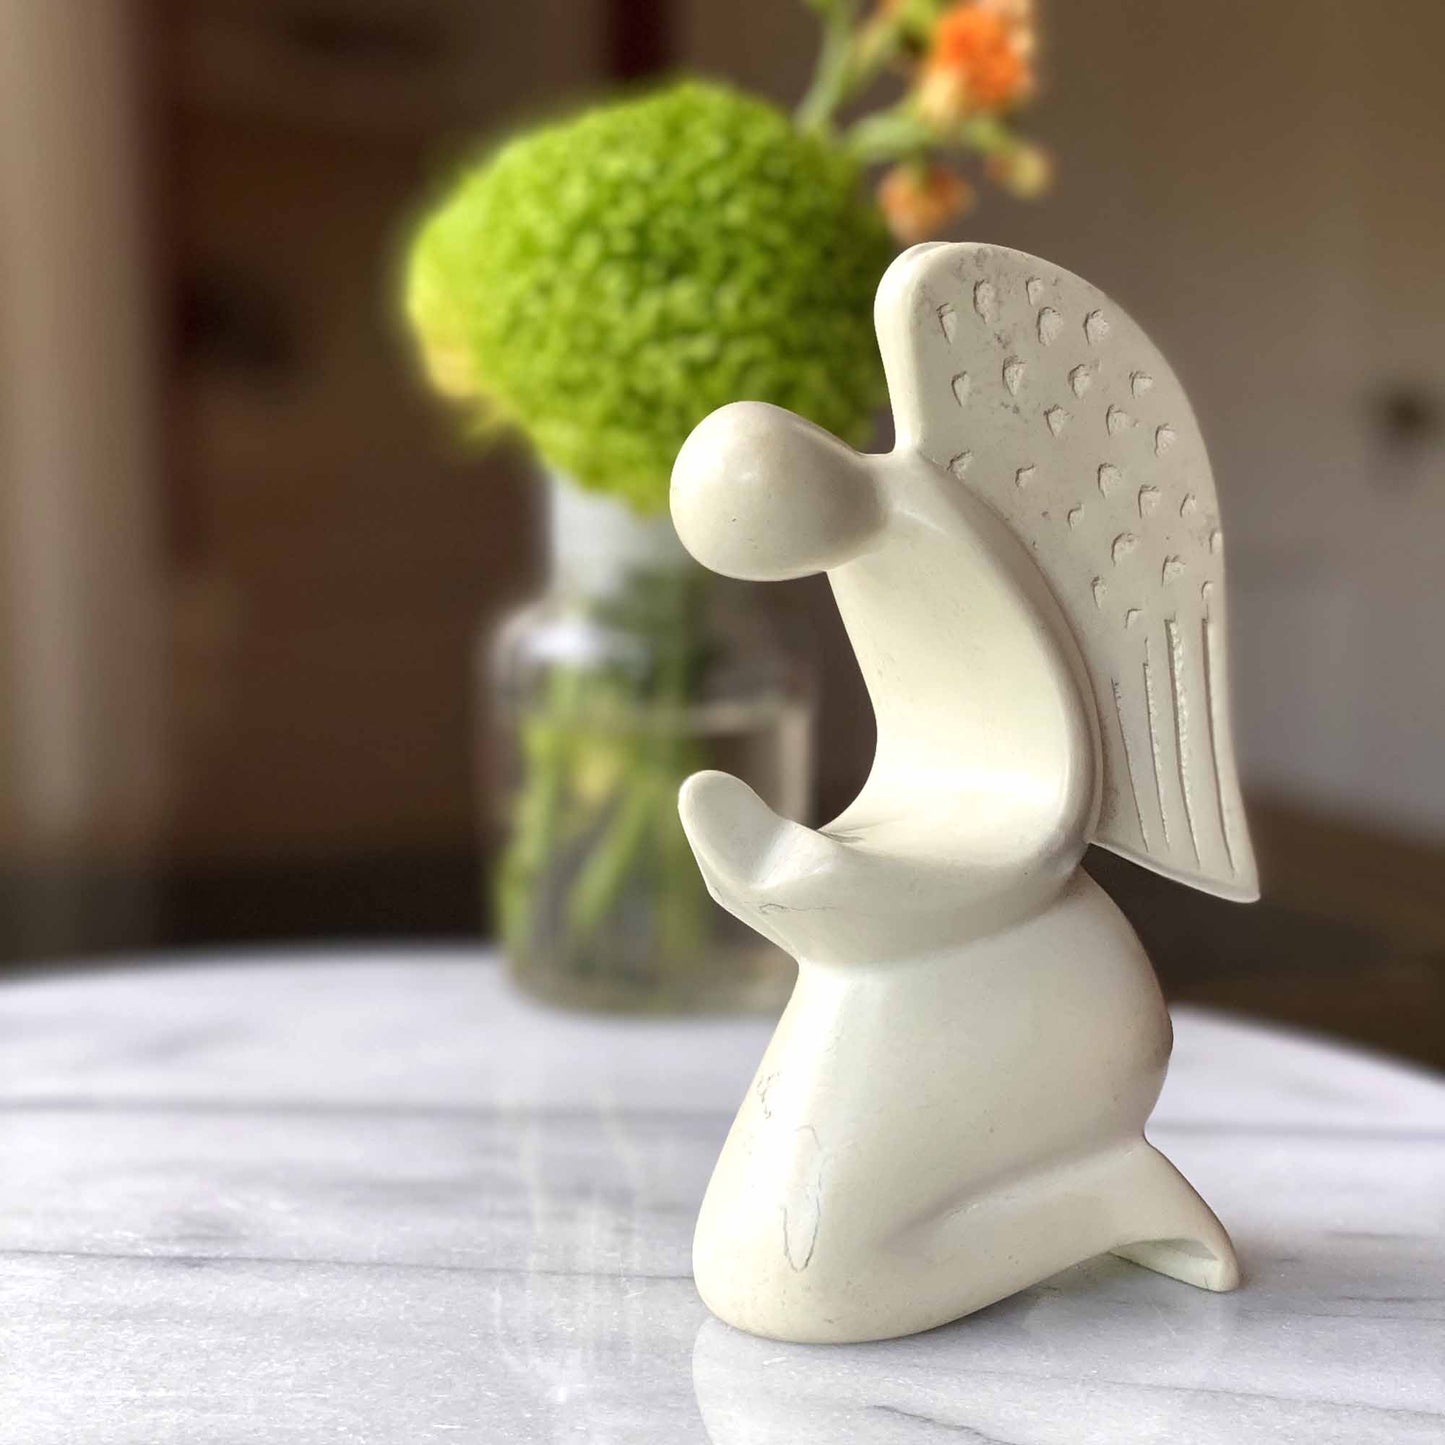 Praying Angel Soapstone Sculpture - Natural Stone - Recetas Fair Trade